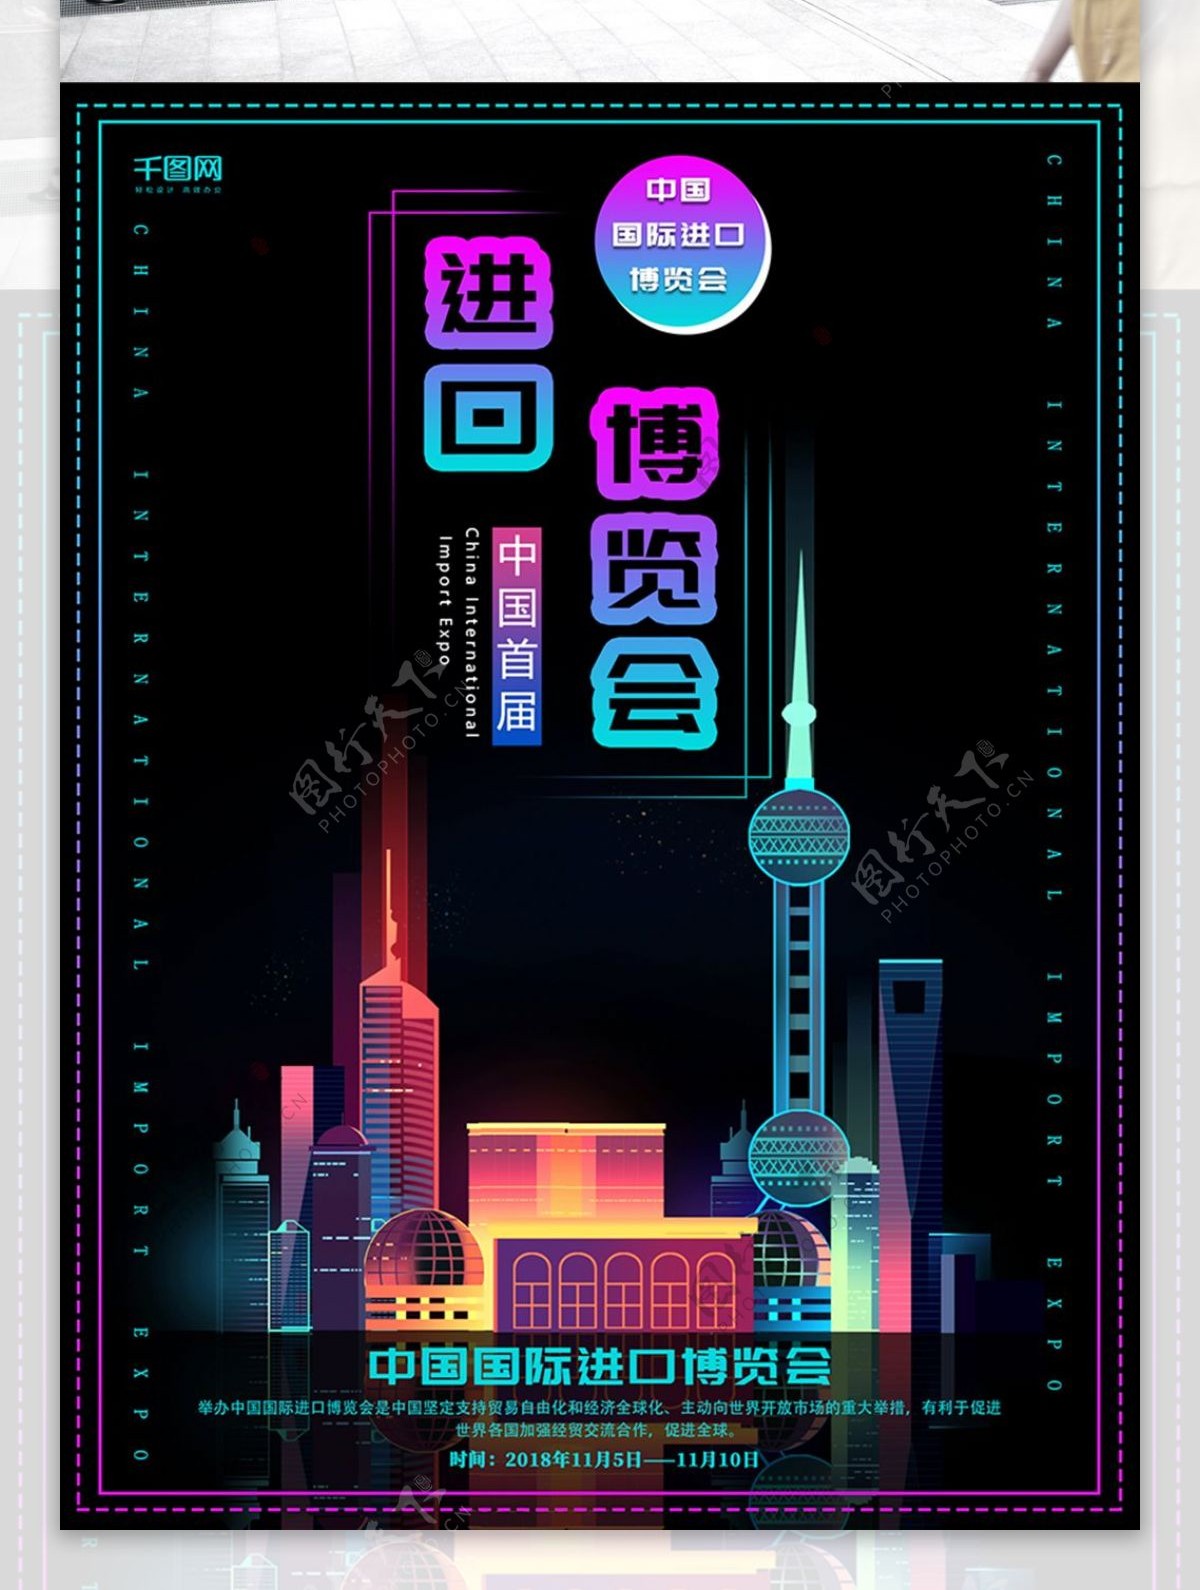 原创创意渐变首届中国国际进口博览会海报